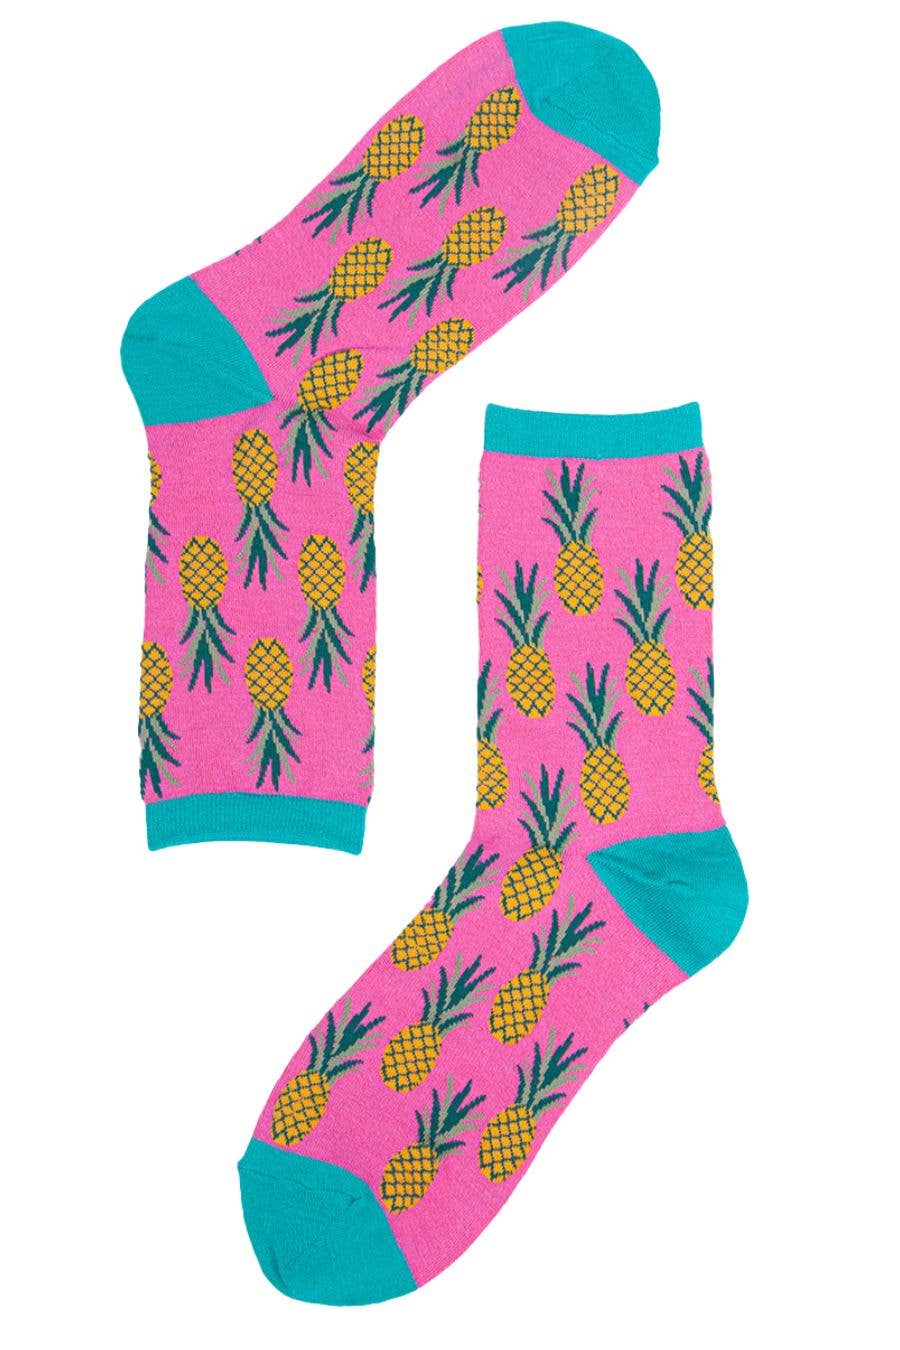 Womens Bamboo Socks Pineapple Print Novelty Ankle Socks Pink